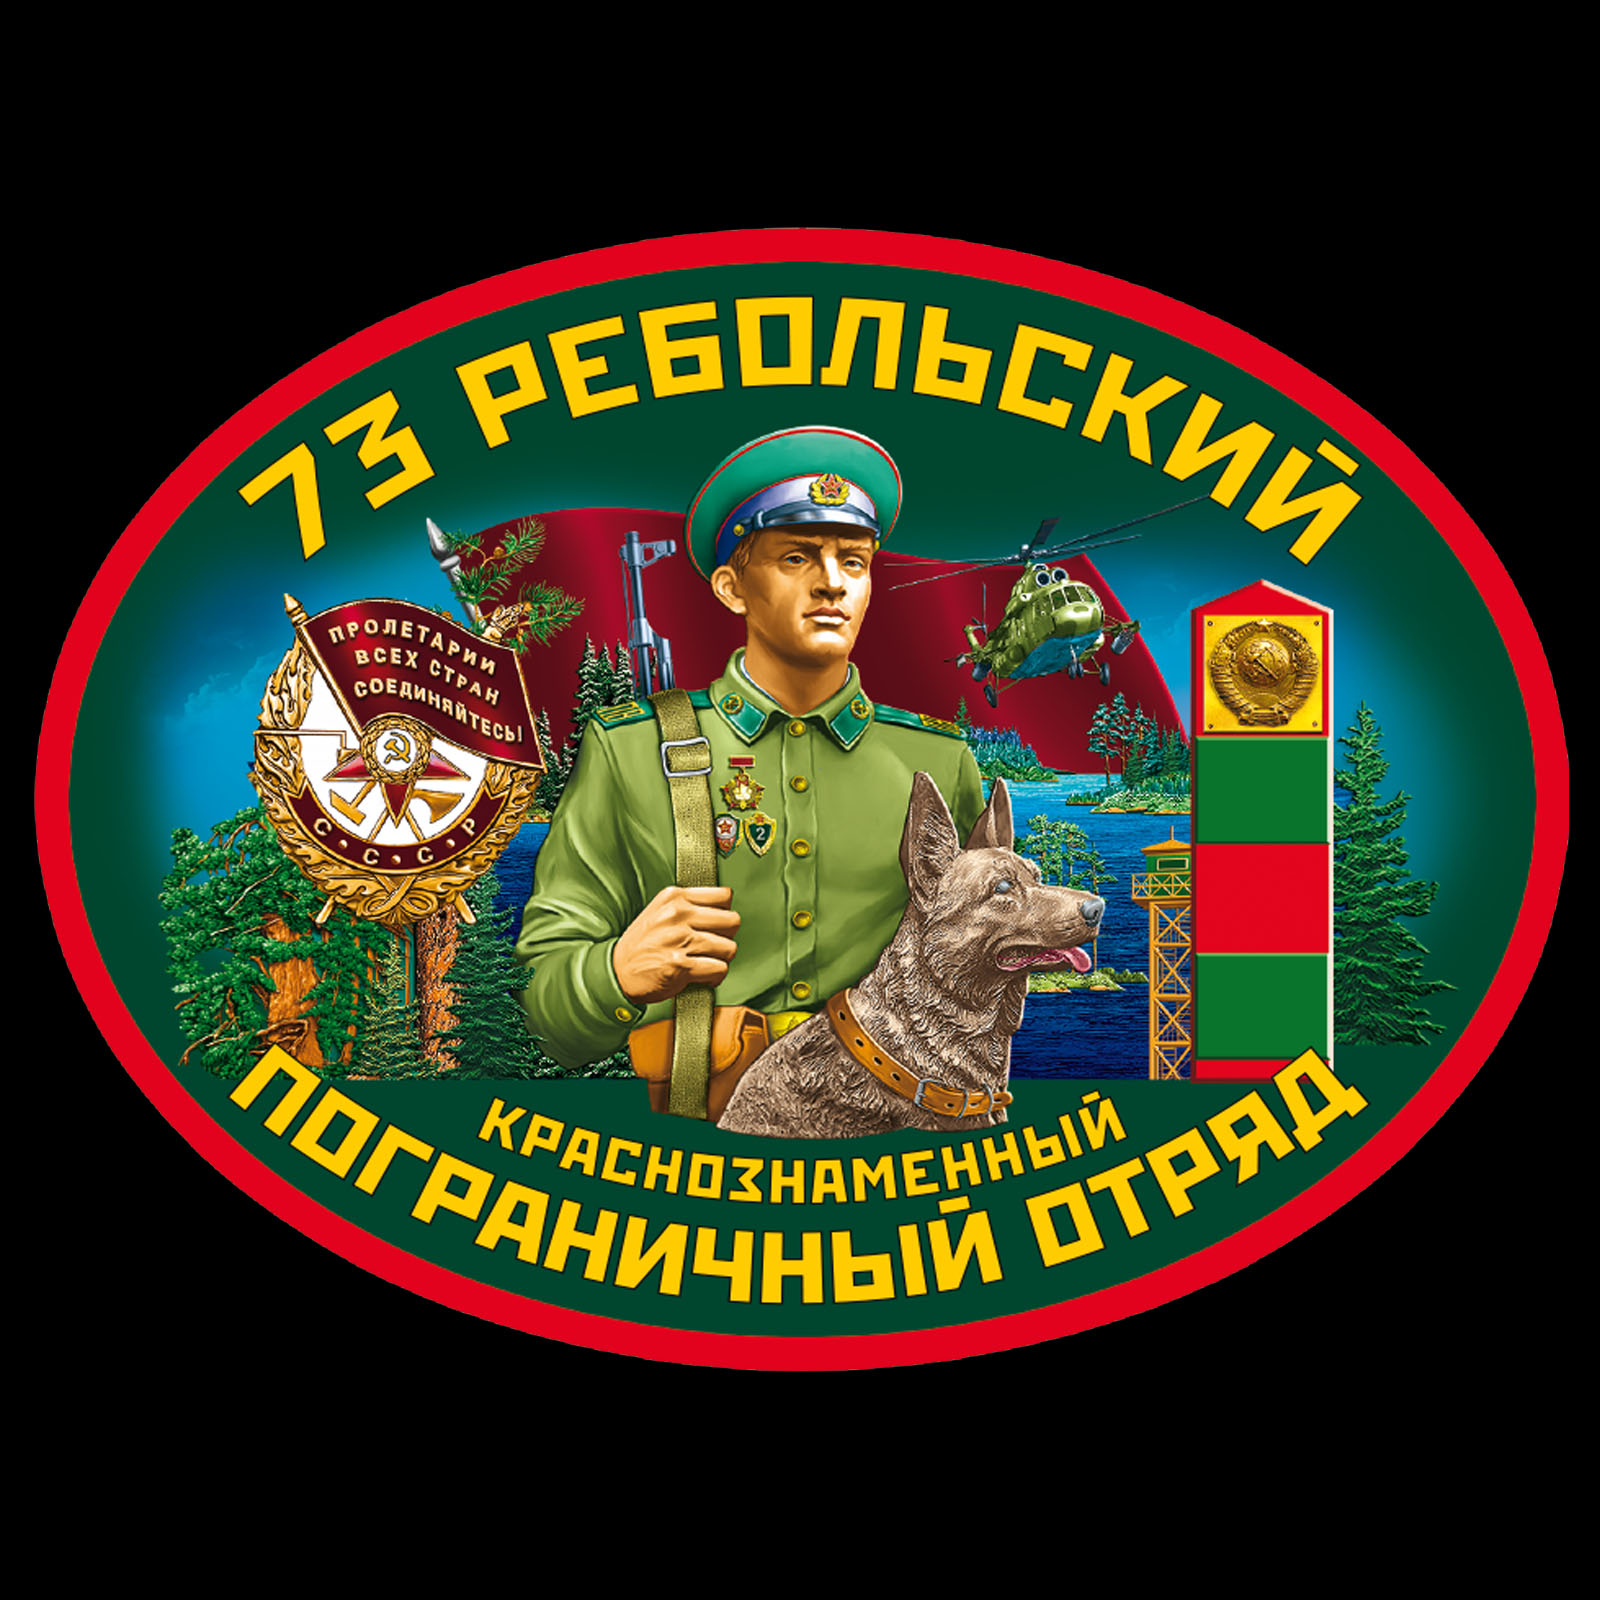 Чёрная футболка "73 Ребольский пограничный отряд" 